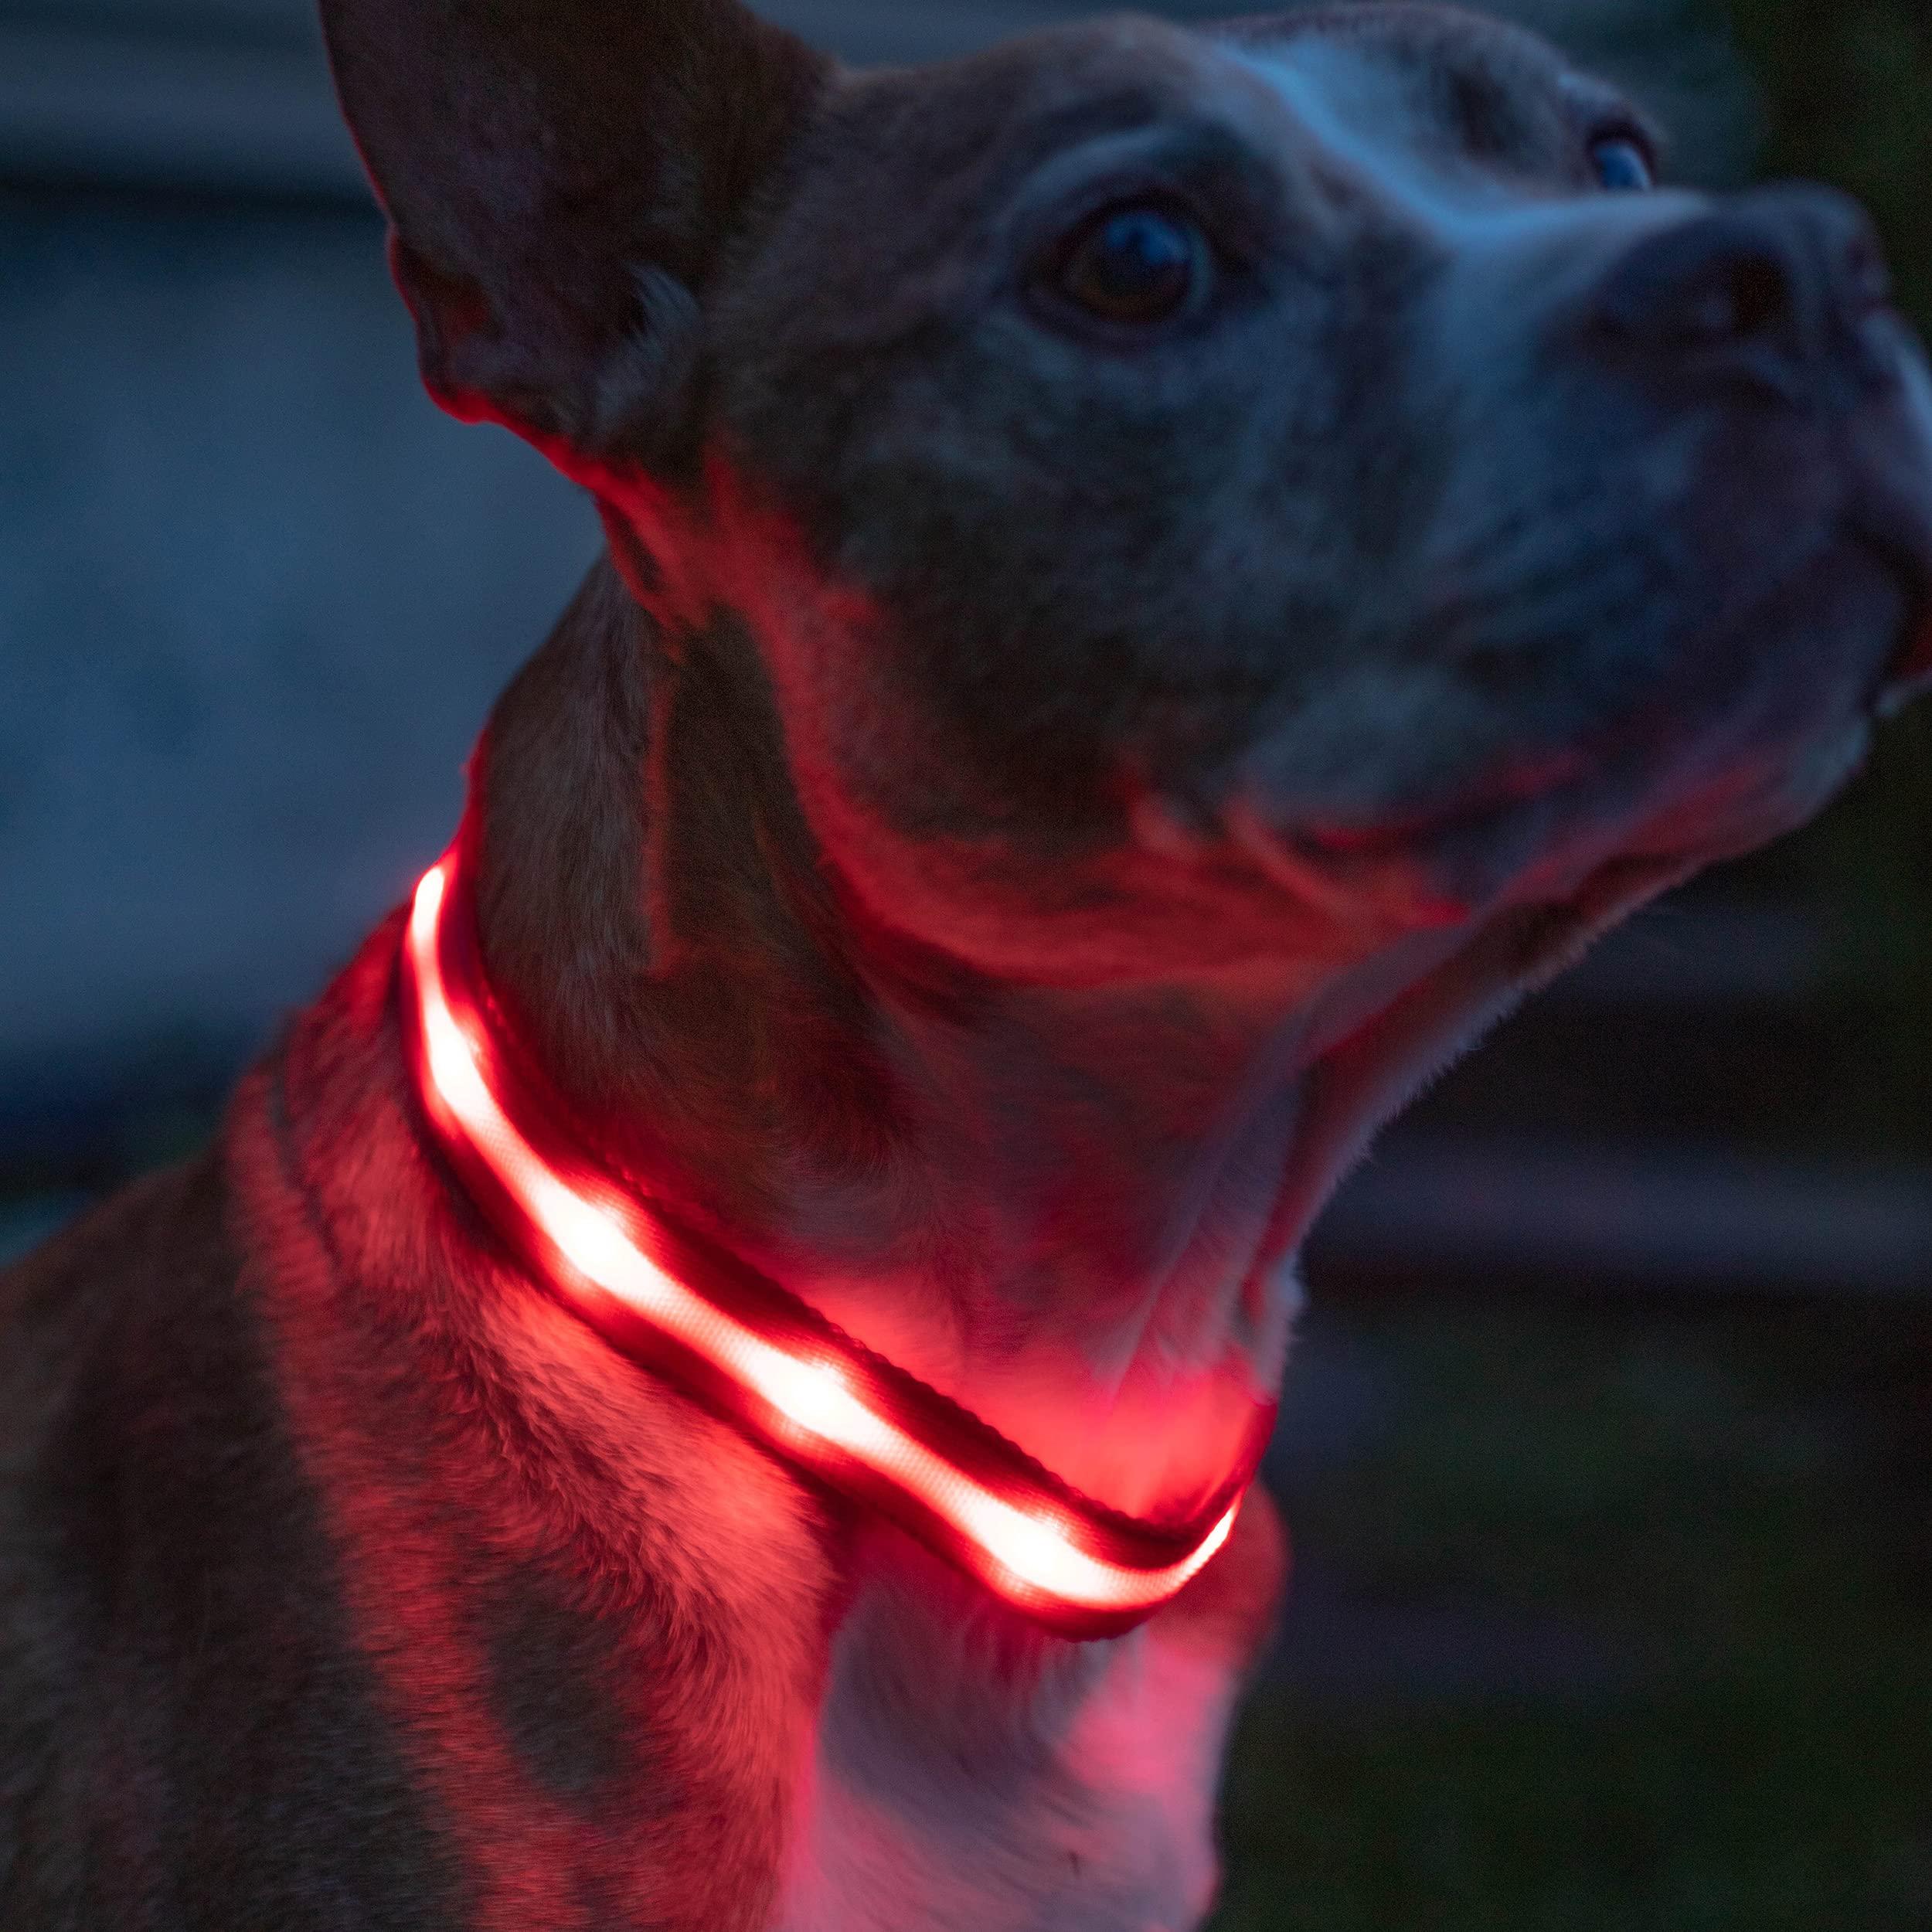 Ошейник с подсветкой для собак L с аккумулятором UFT Pet LED 2 Red